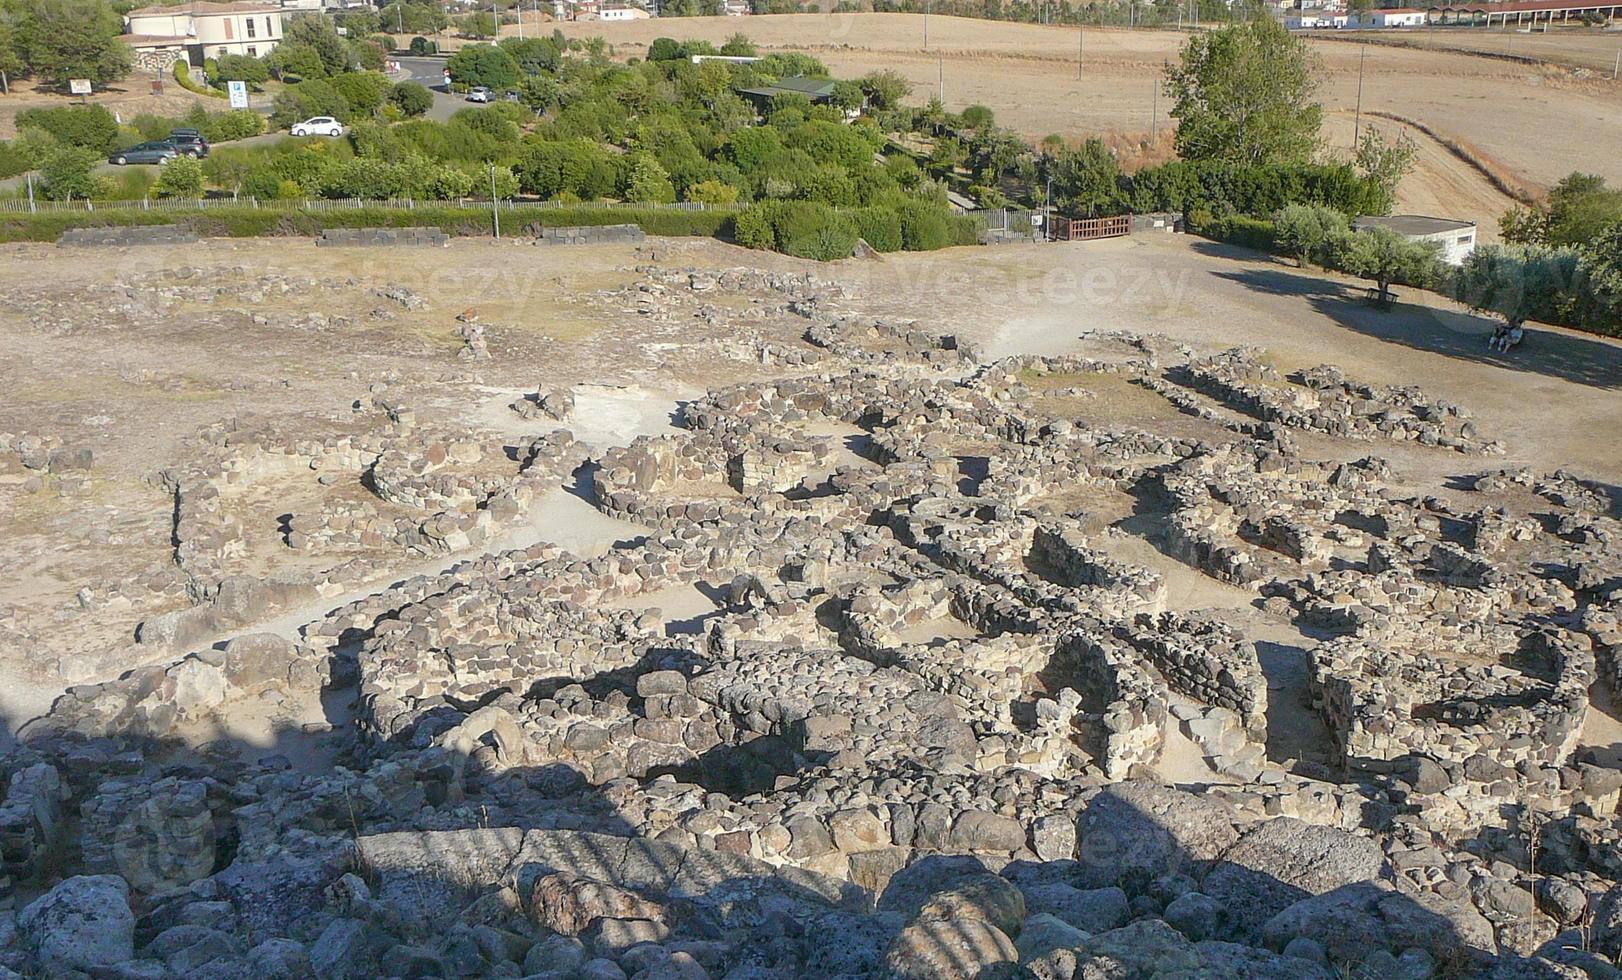 ruines de l'ancien bâtiment mégalithique sunuxi nuraghe en sardaigne, photo